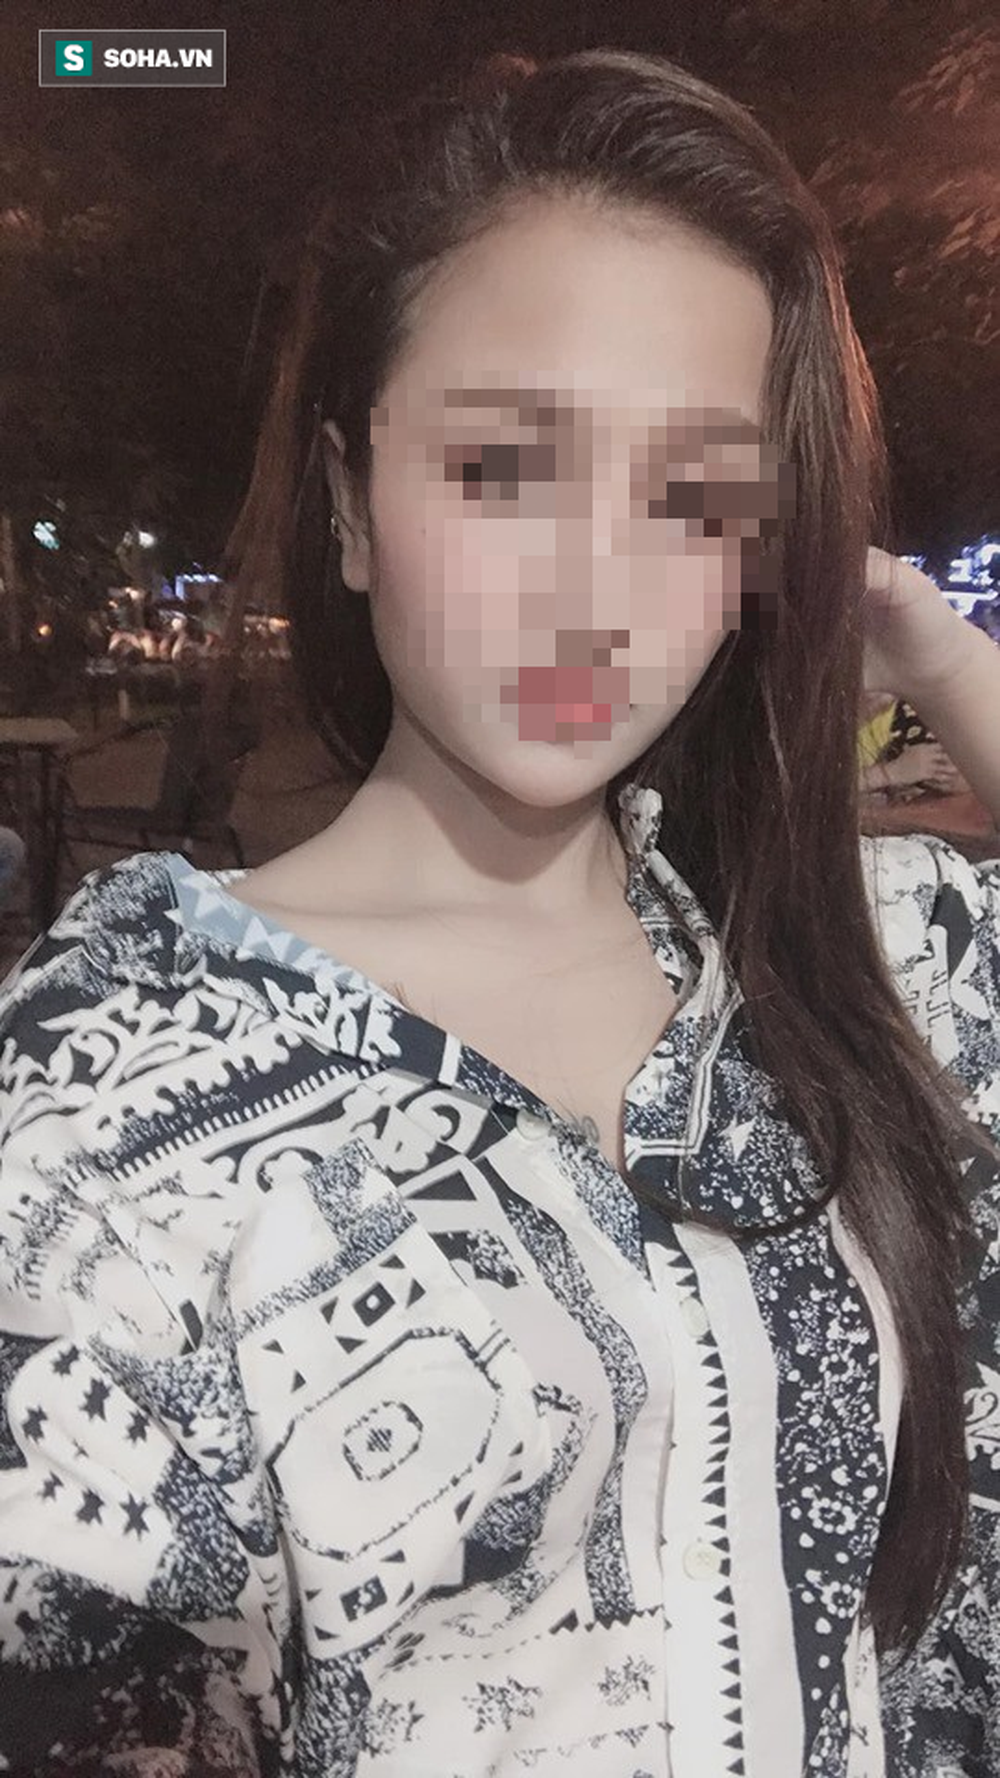 Hà Nội: Nghi án cô gái có ngoại hình xinh xắn bị người yêu sát hại trước ngày đi nước ngoài - Ảnh 2.